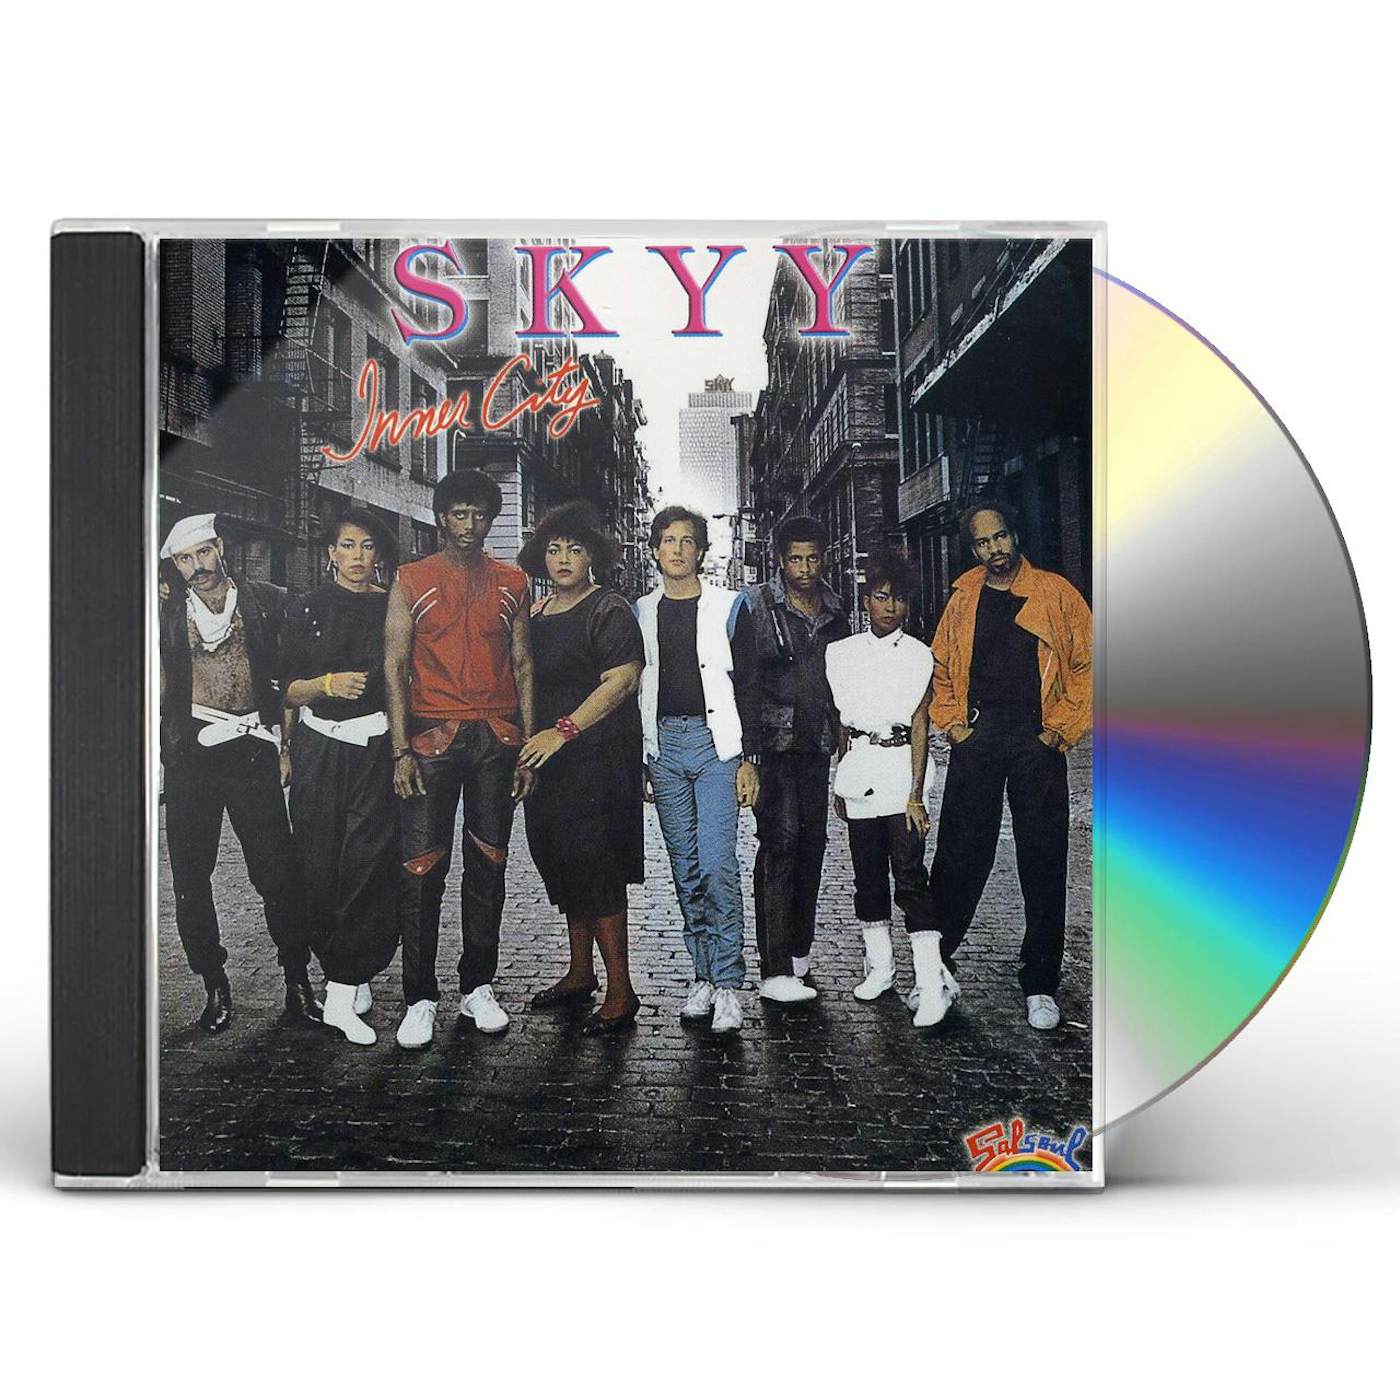 Skyy INNER CITY CD